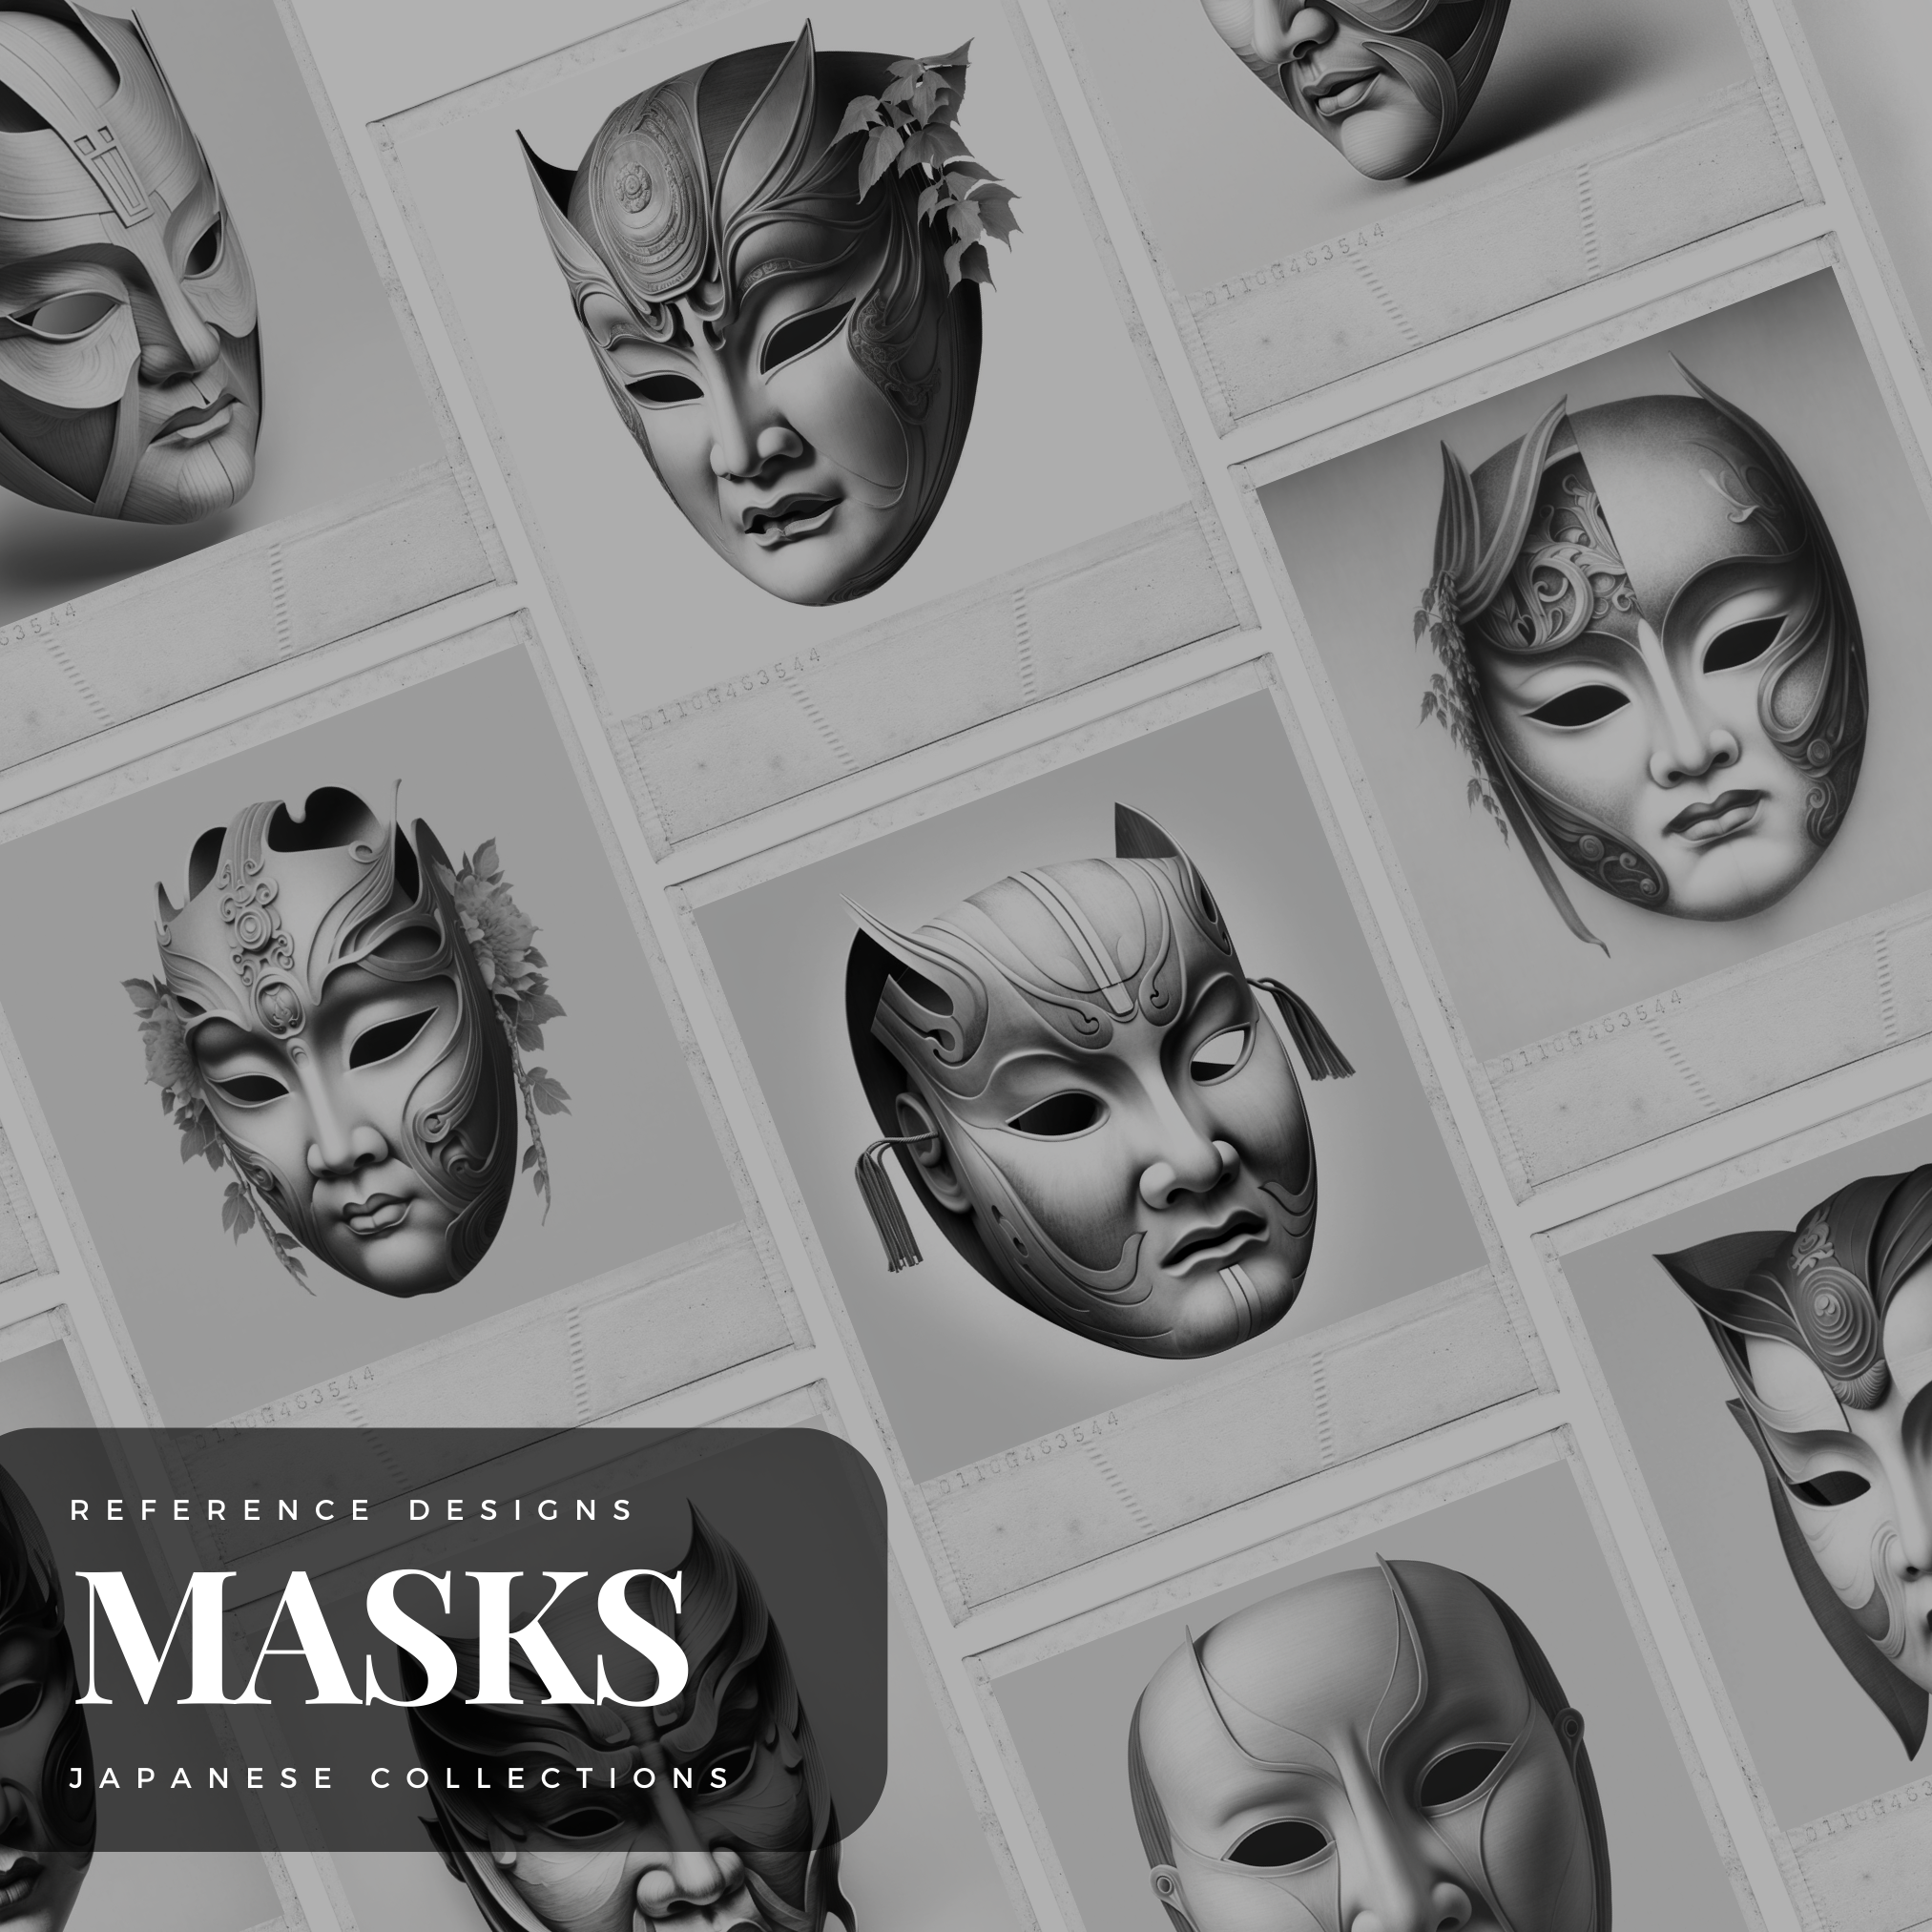 Japanese Noh Masks Digital Reference Design Collection: 50 Procreate & Sketchbook Images